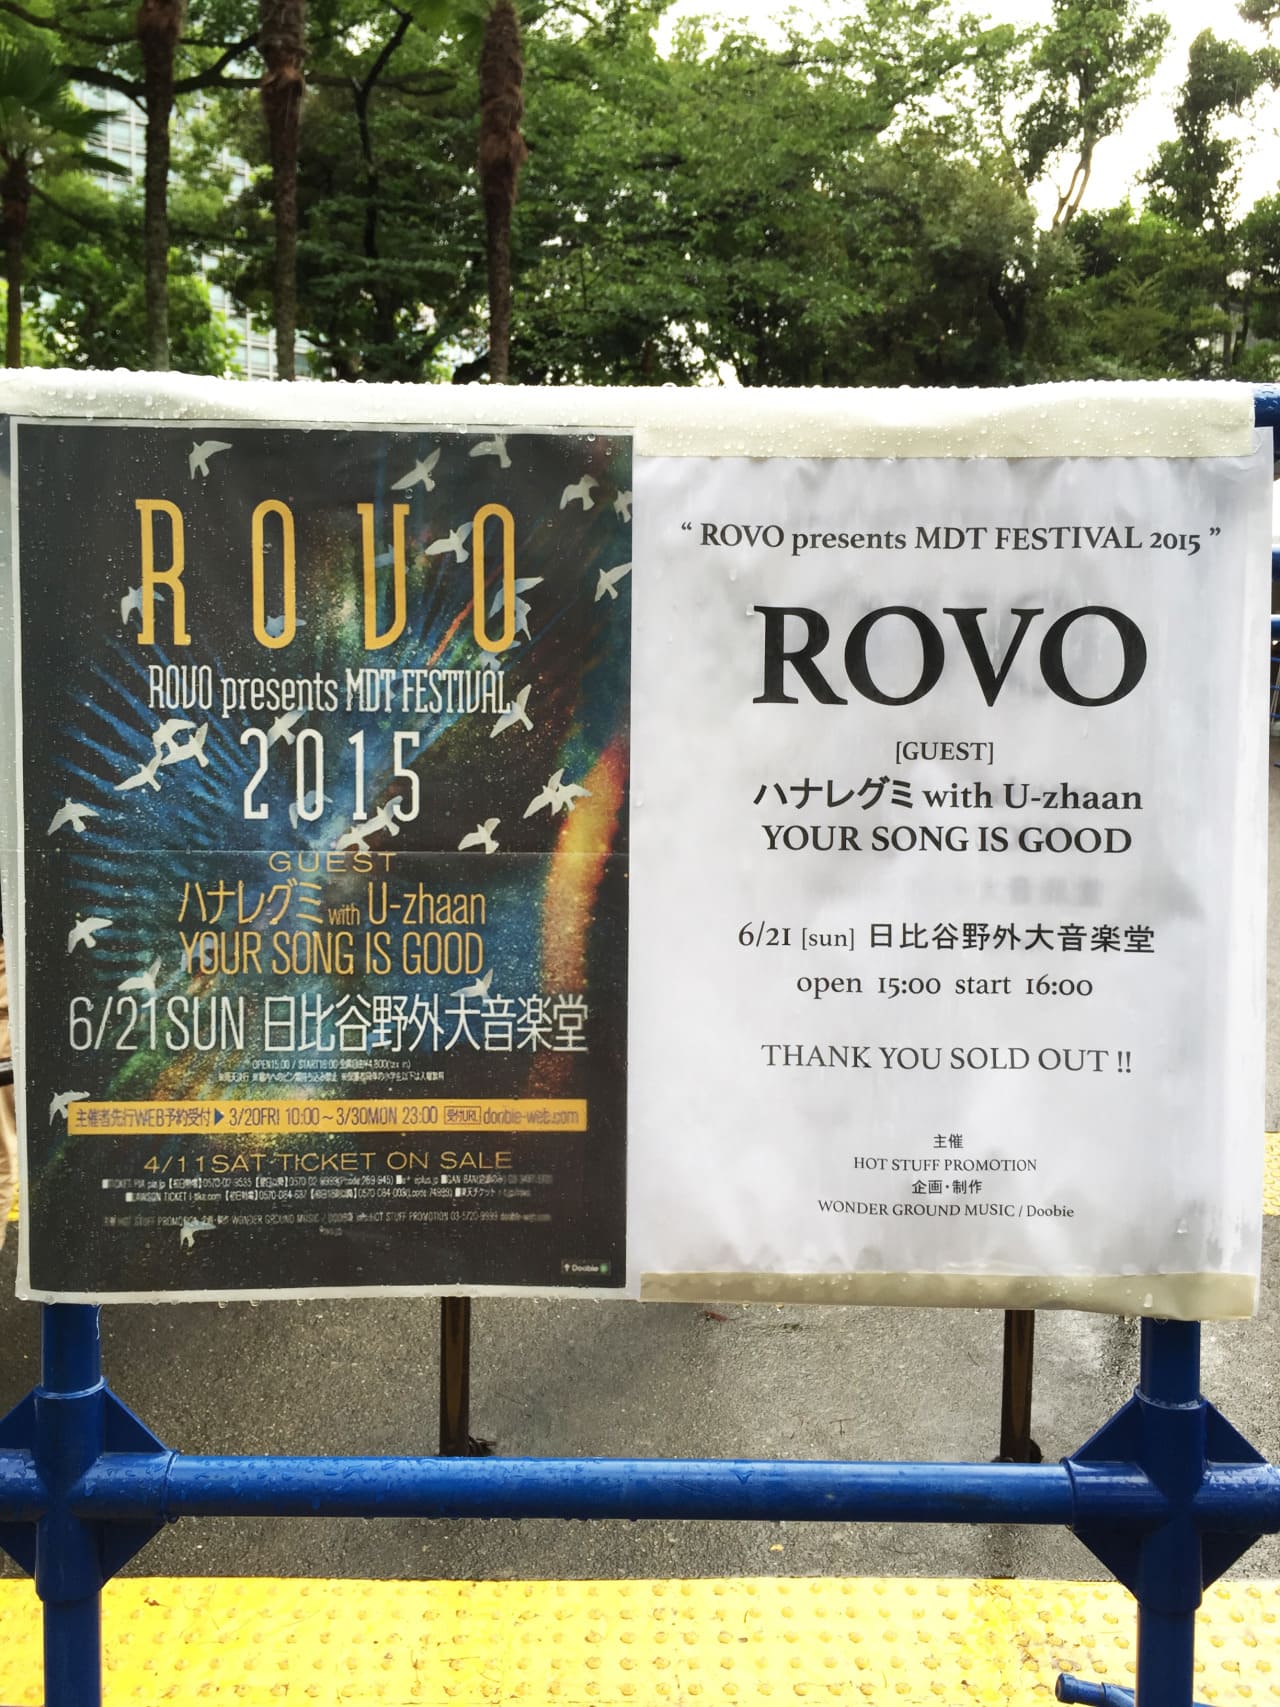 ROVO MDT Festival 2015